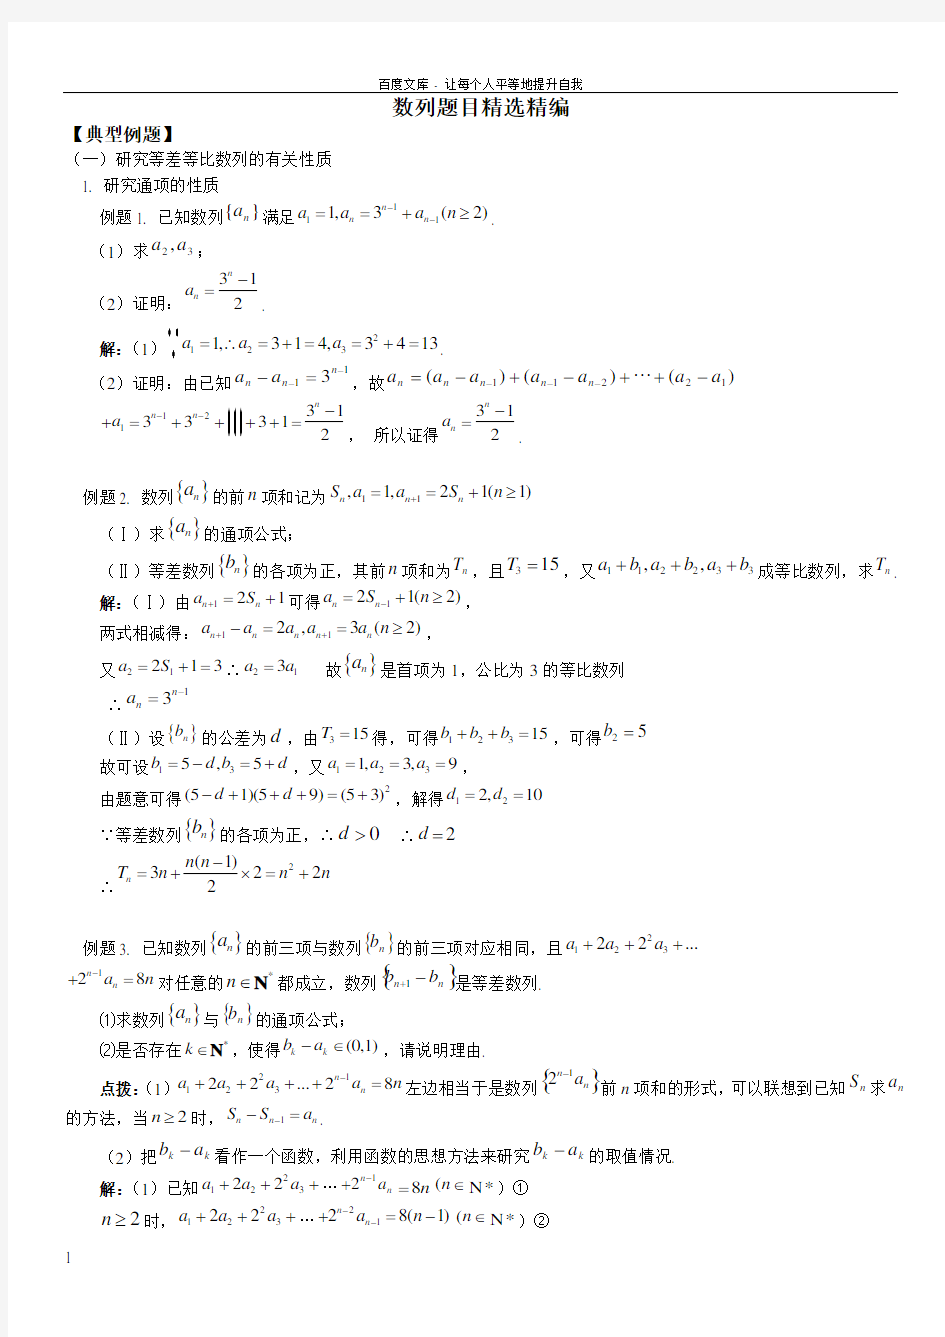 2016届高考数学经典例题集锦数列(含答案)